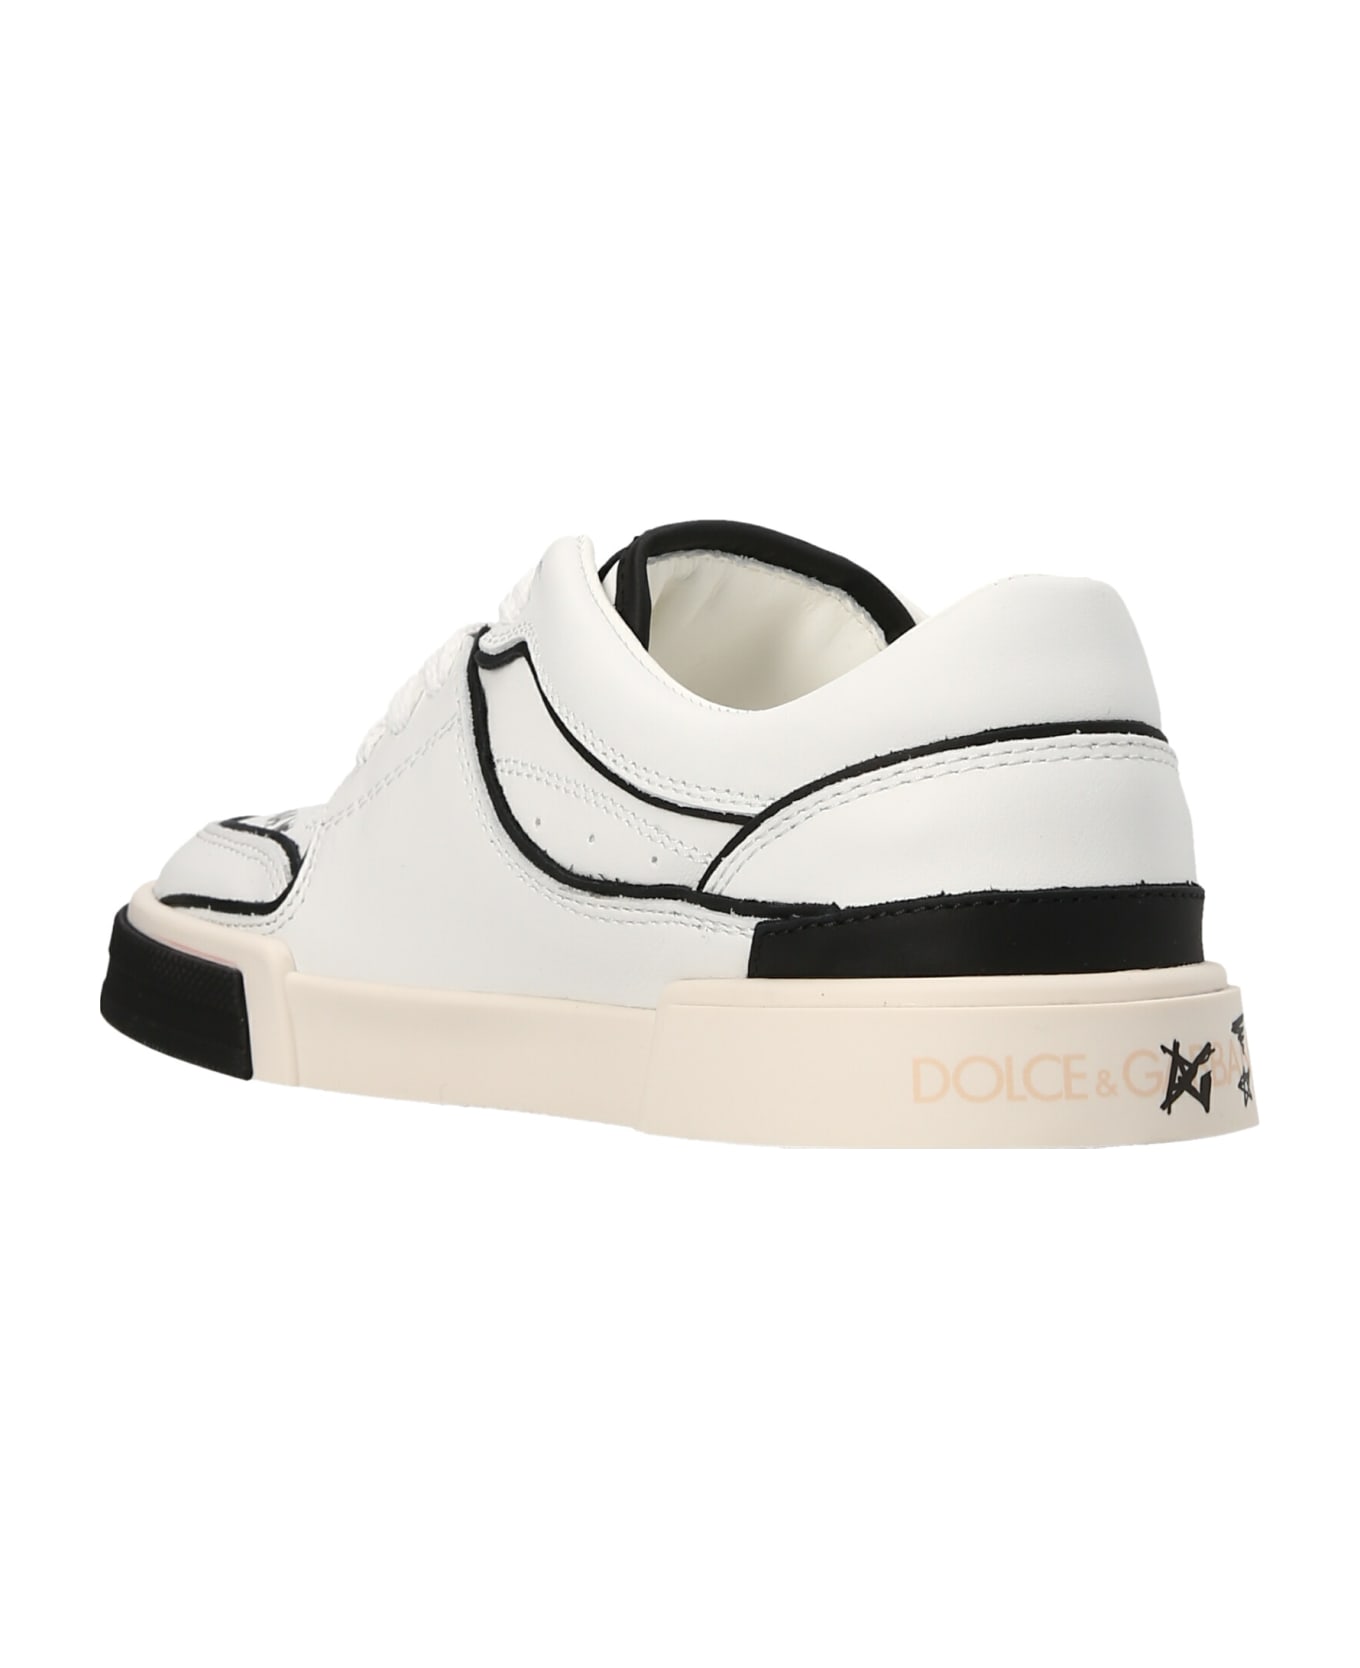 Dolce & Gabbana Logo Print Sneakers - White/Black